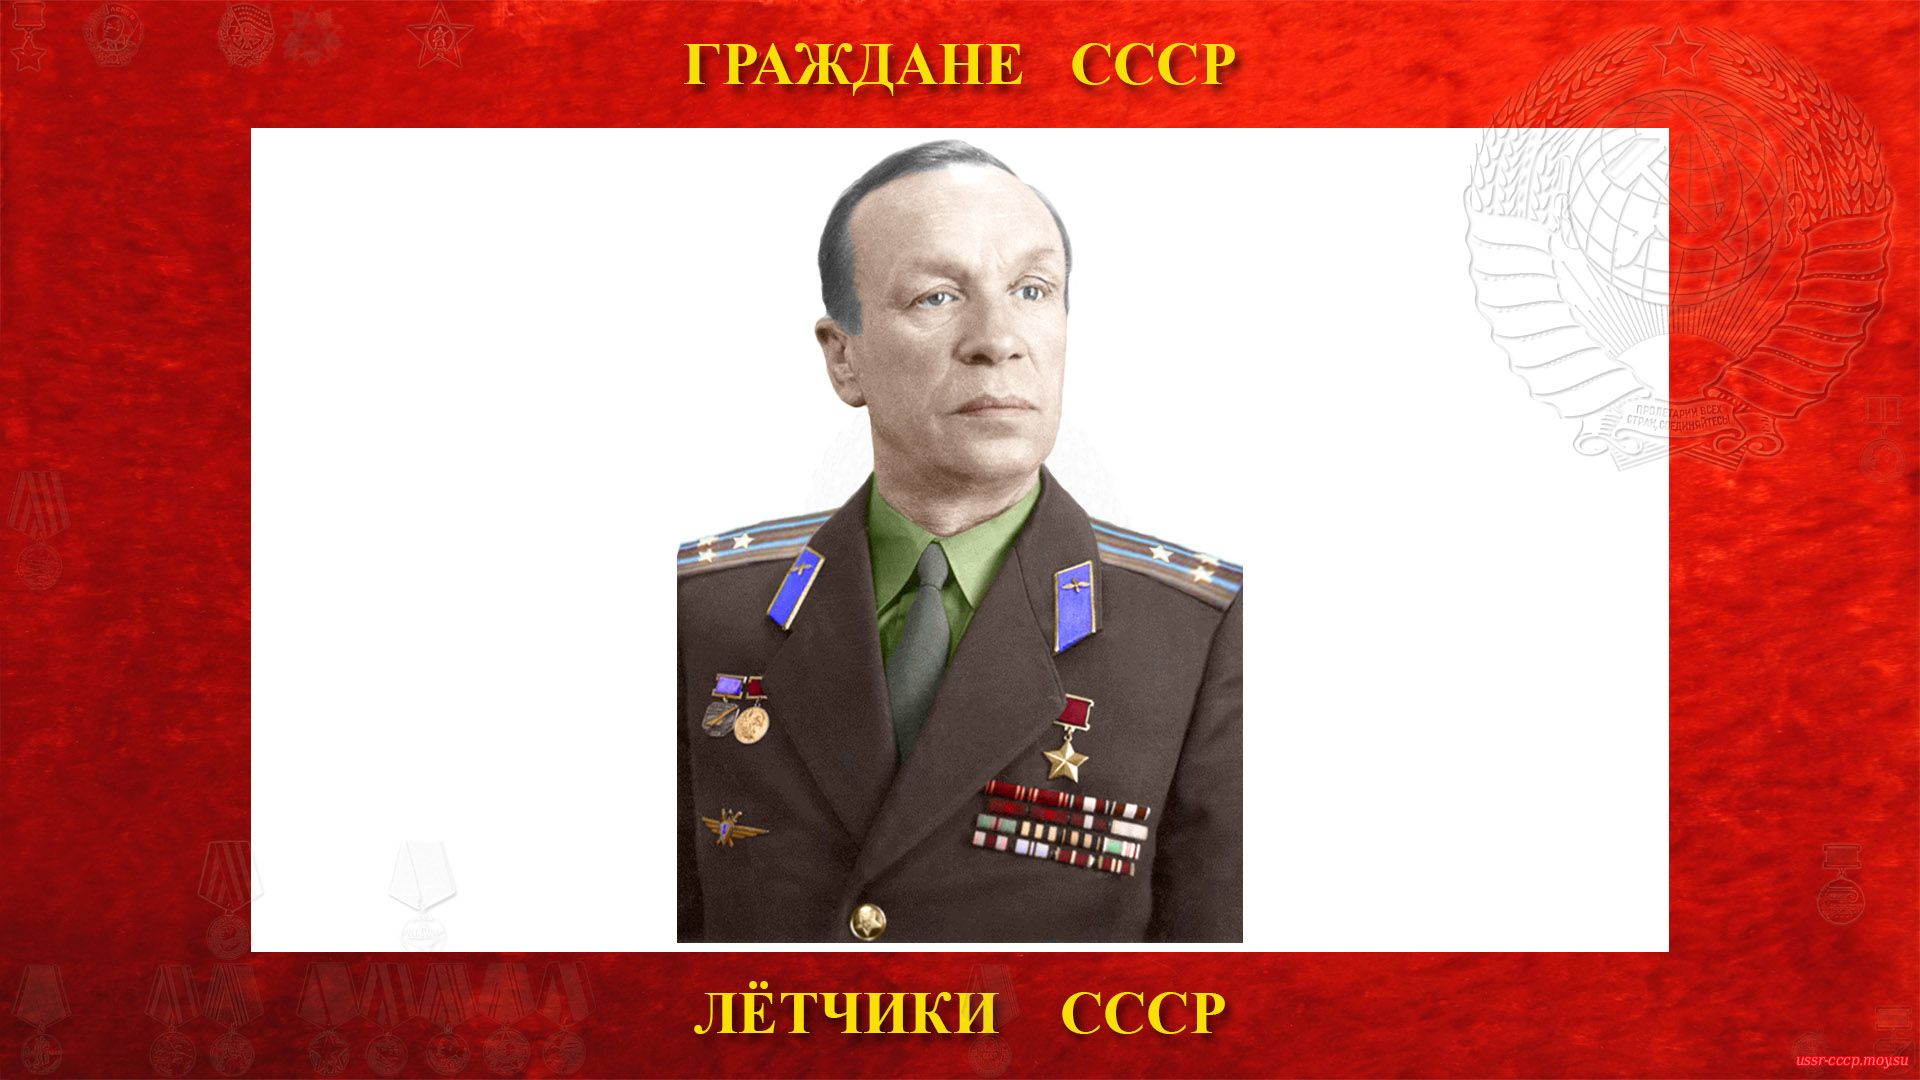 Анохин Сергей Николаевич — Советский лётчик-испытатель (01.04.1910 — 15.04.1986)